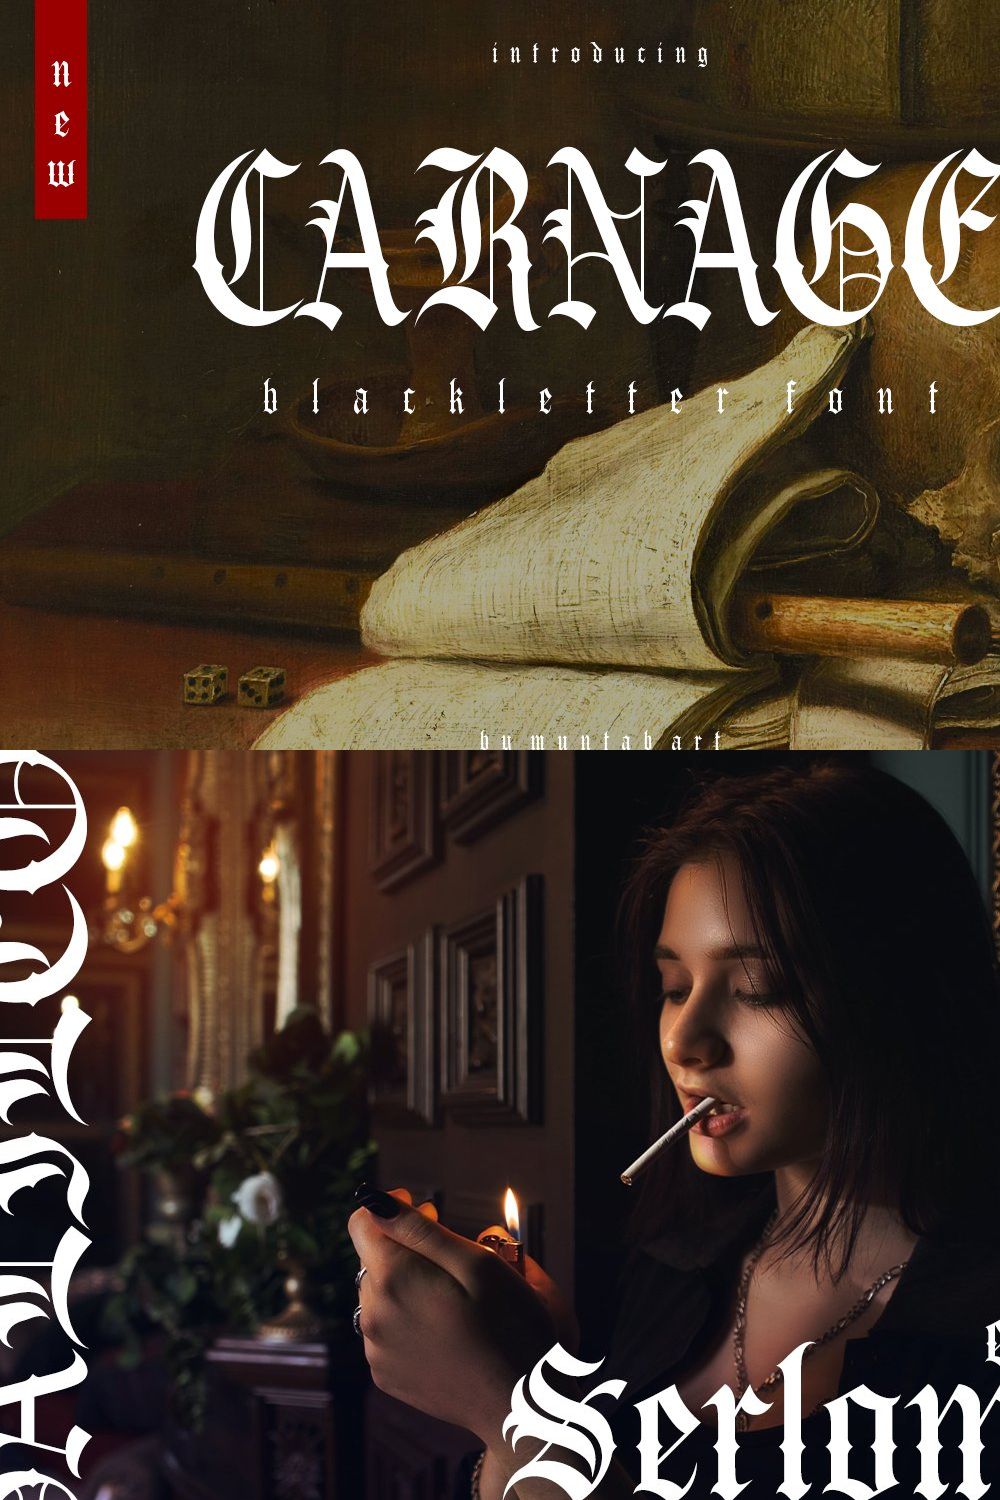 Carnage | Modern Blackletter pinterest preview image.